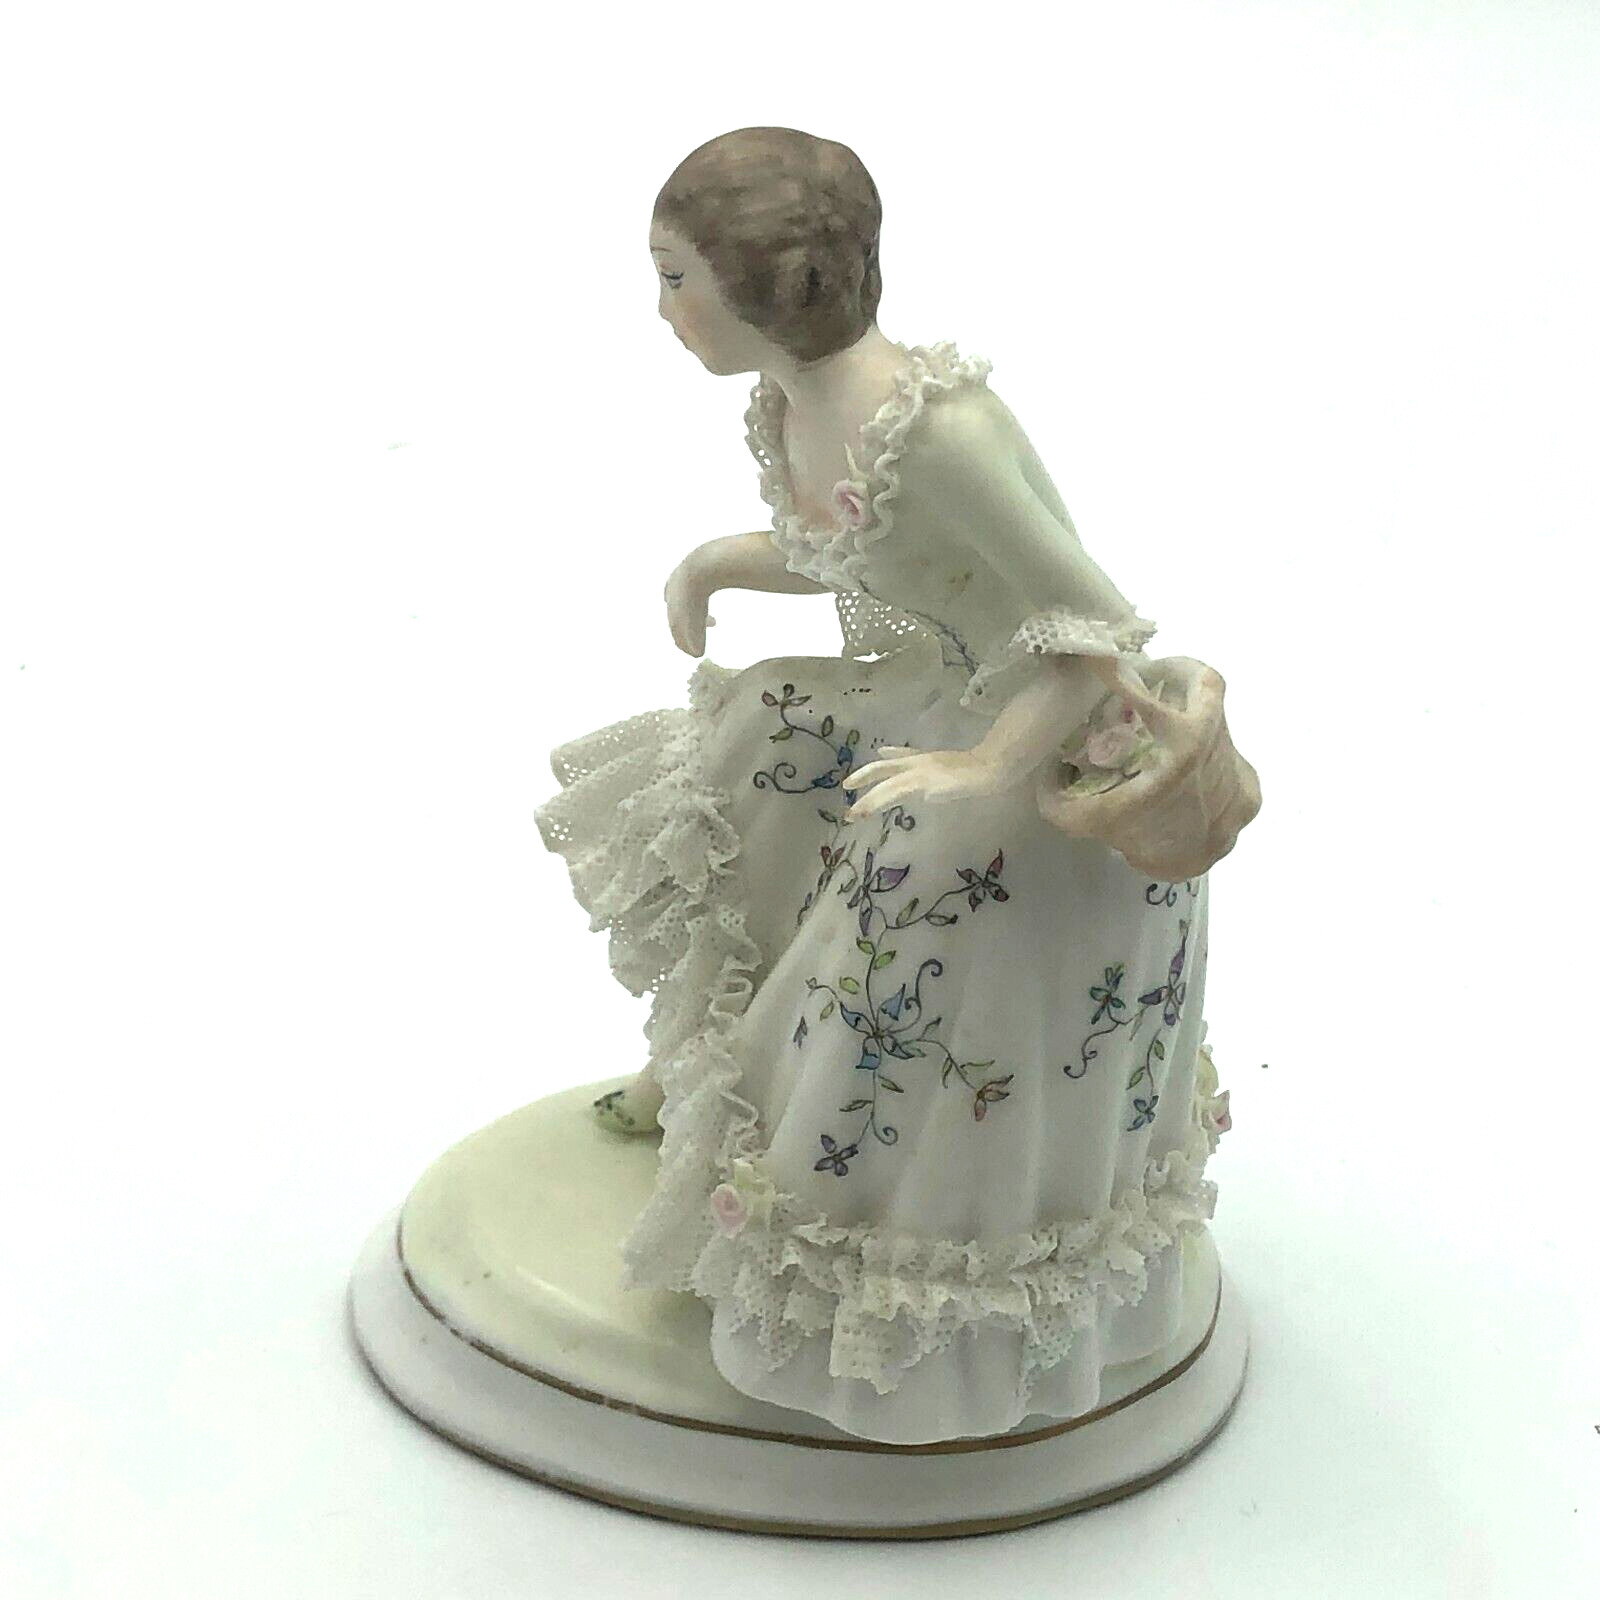 Vintage Figurine Woman Lady porcelain dresden lace dress Basket ARG Signed 181